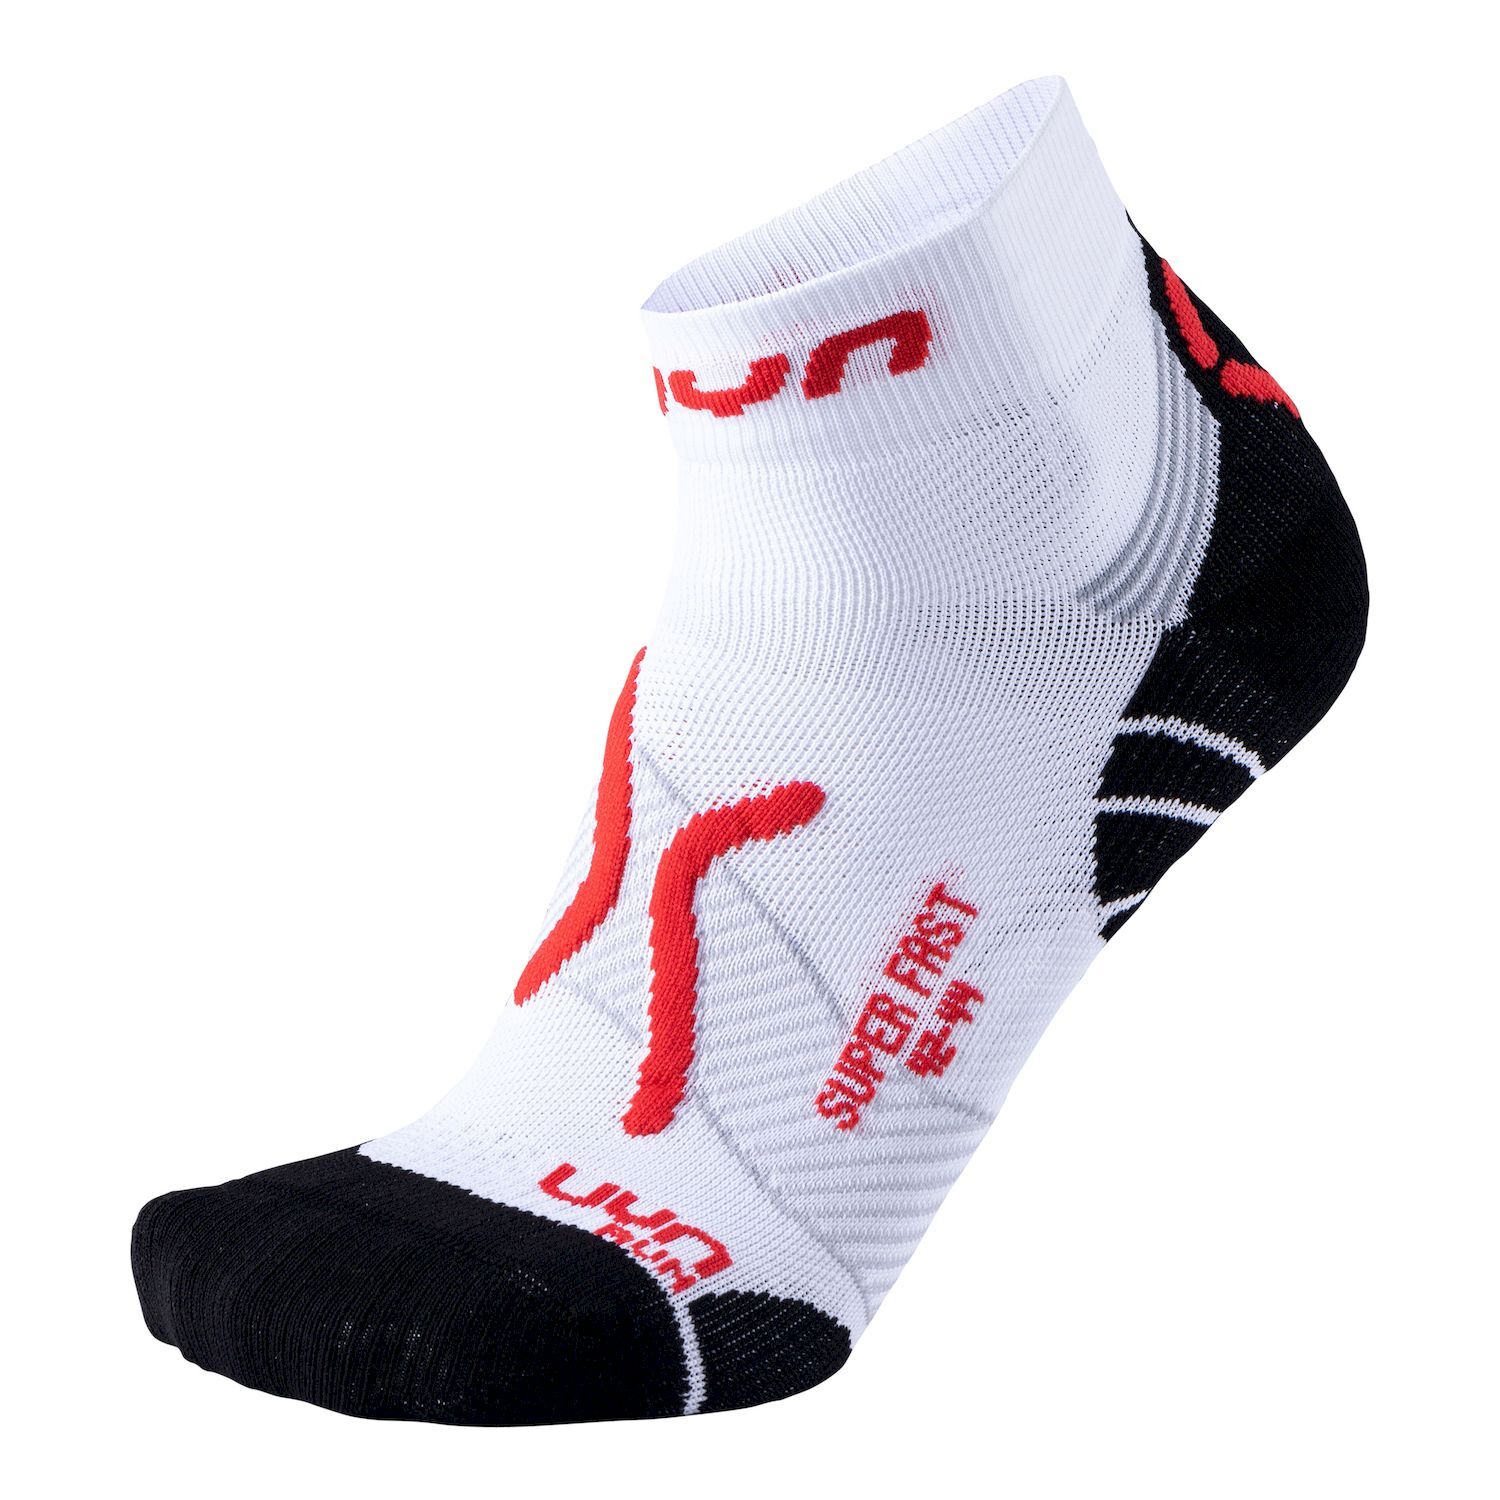 Uyn Run Super Fast - Running socks - Men's